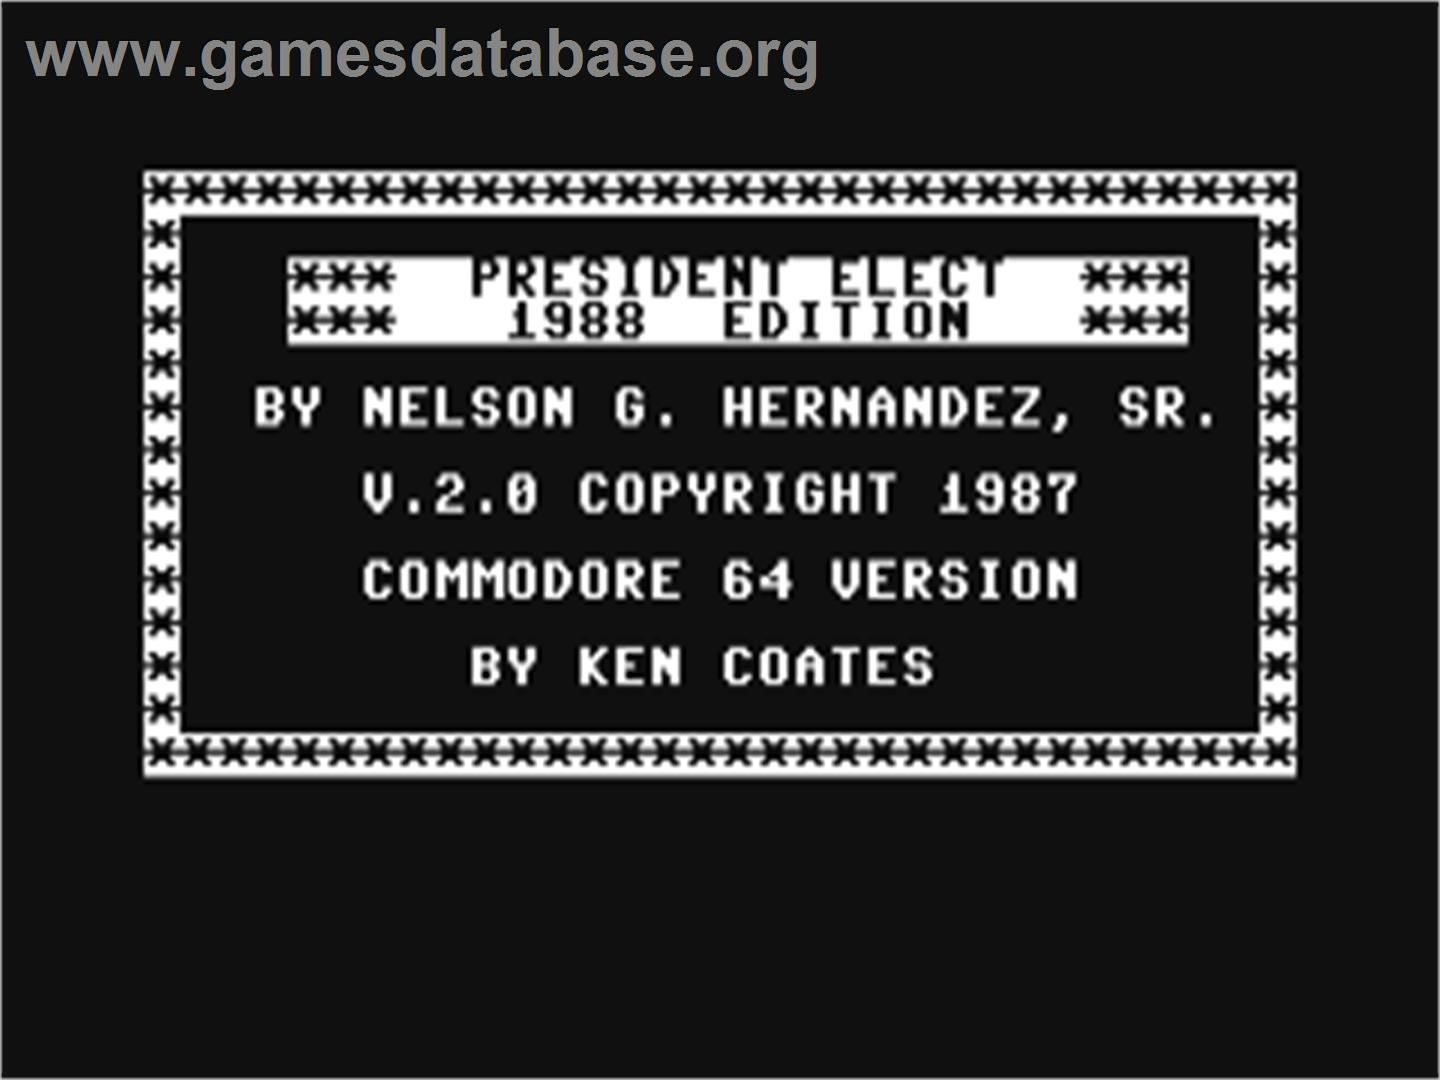 President Elect - Commodore 64 - Artwork - Title Screen